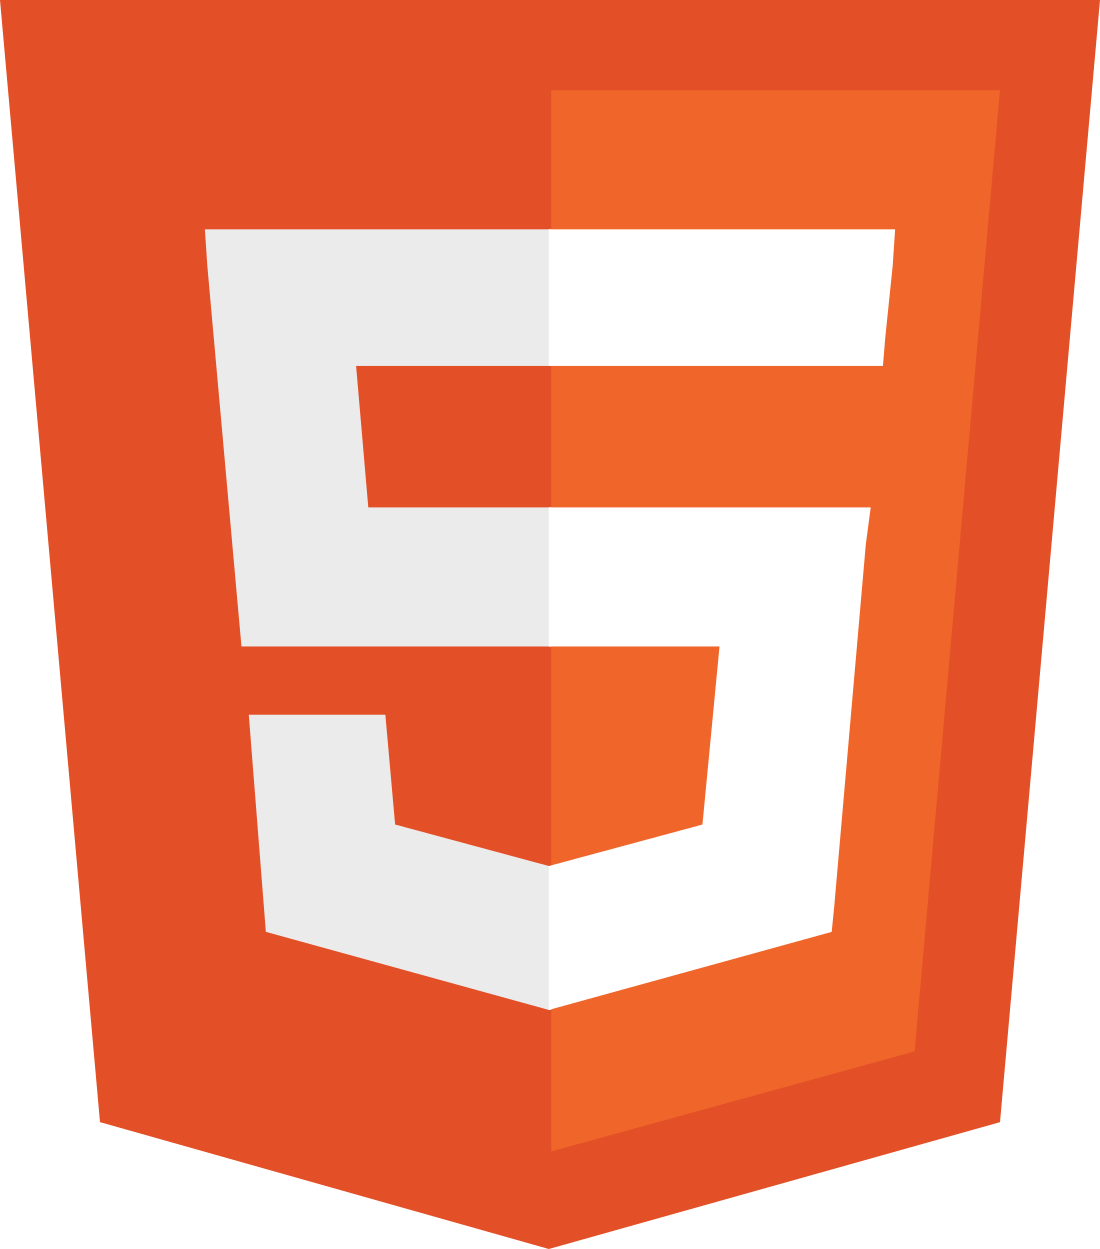 Logo for HTML